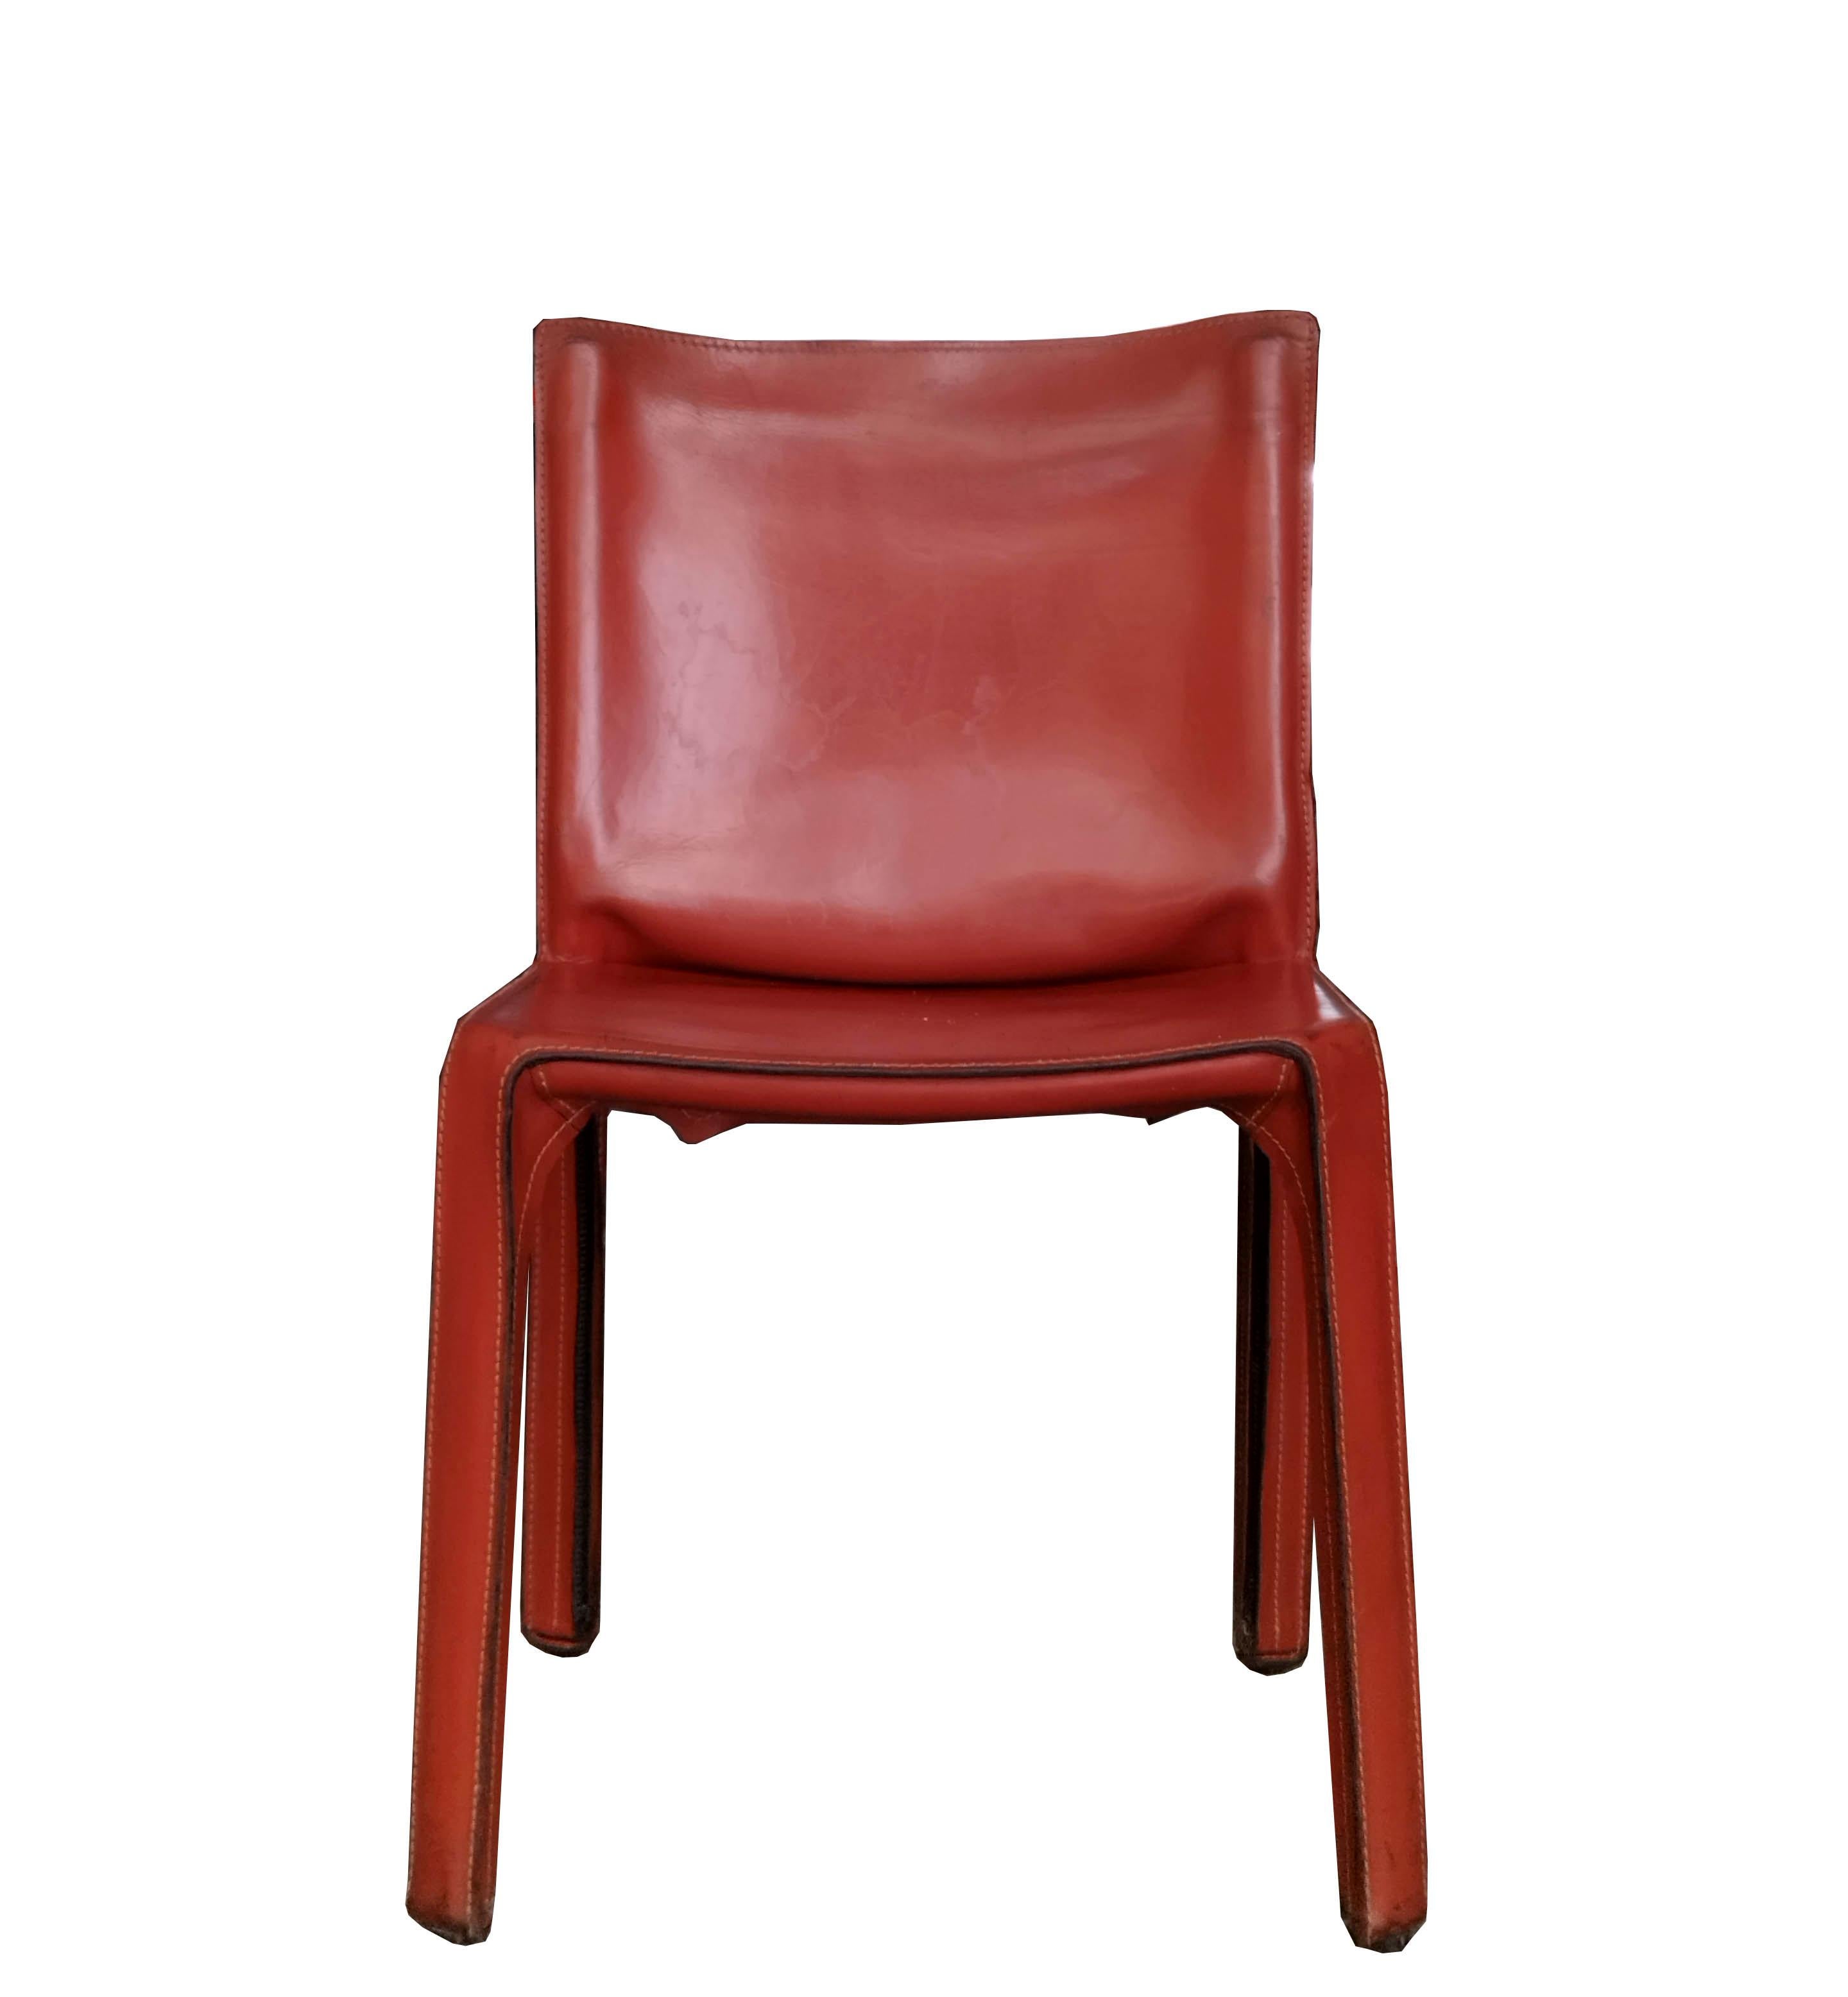 Dieses ikonische Design von Mario Bellini für Cassina aus den 1970er Jahren zeichnet sich durch das ursprüngliche karamellfarbene Leder aus. Der Boden der Stühle trägt die Aufschrift - Cassina.